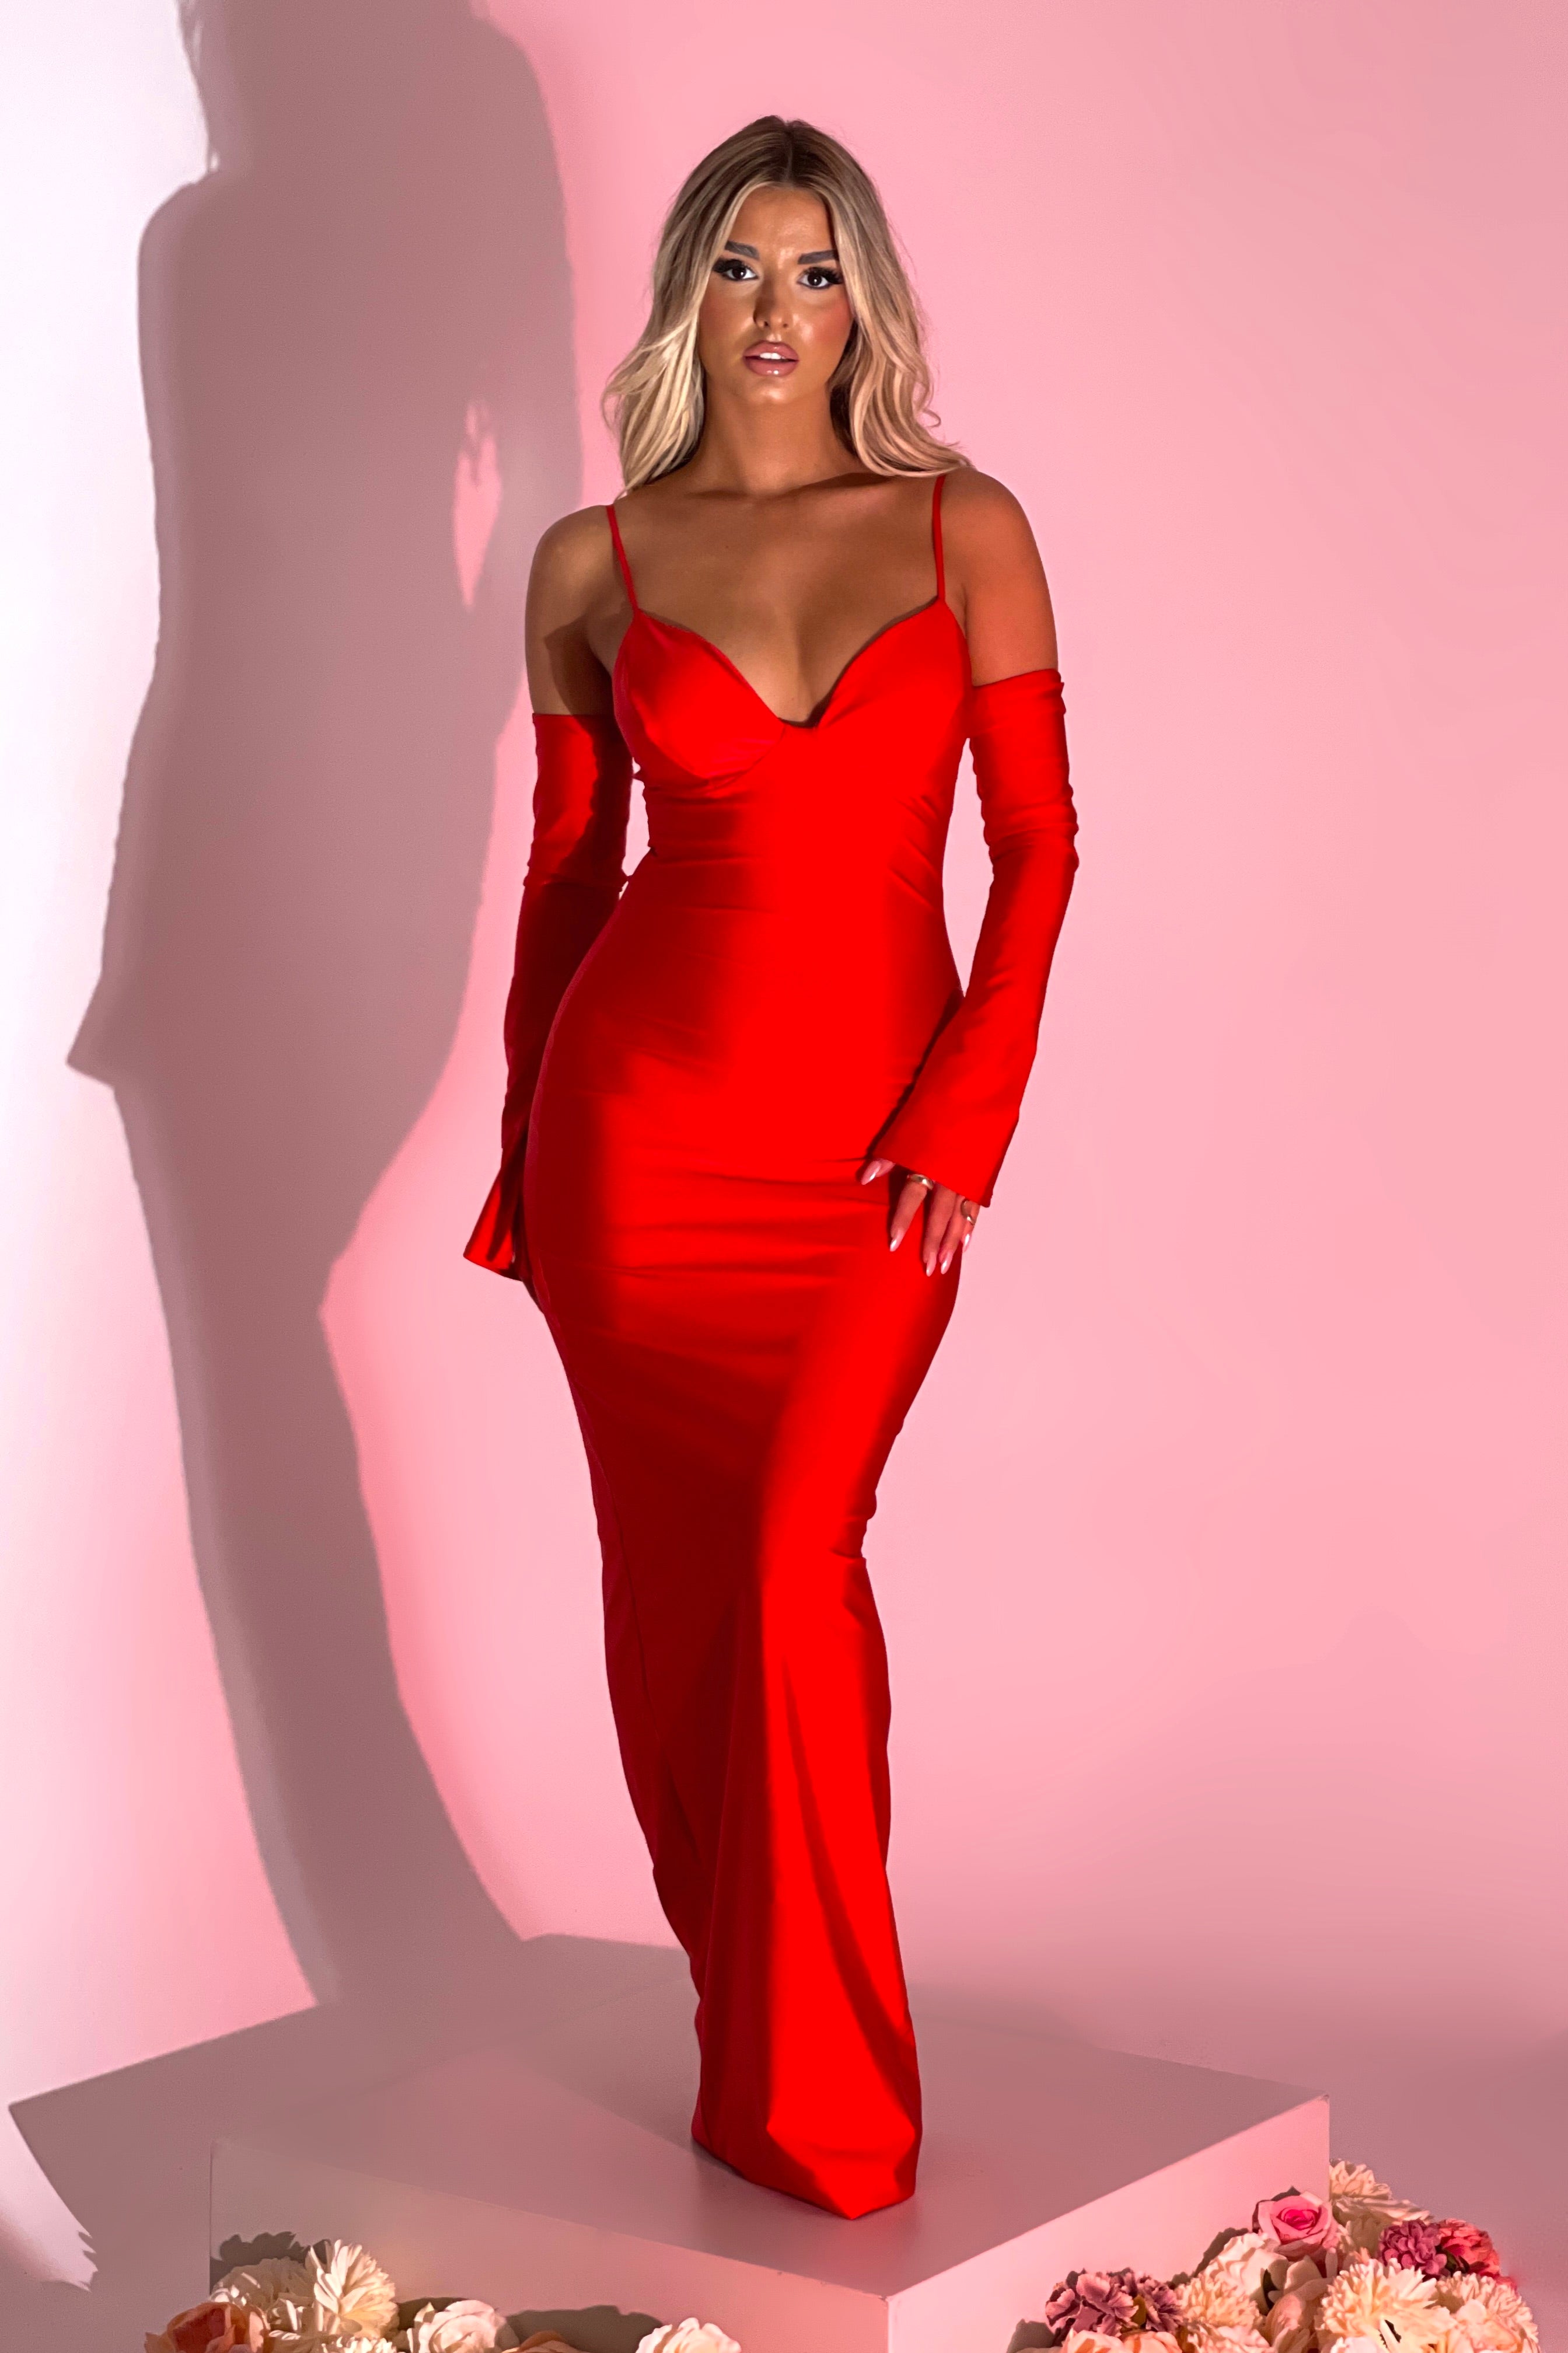 Sarah Hot Red Dress